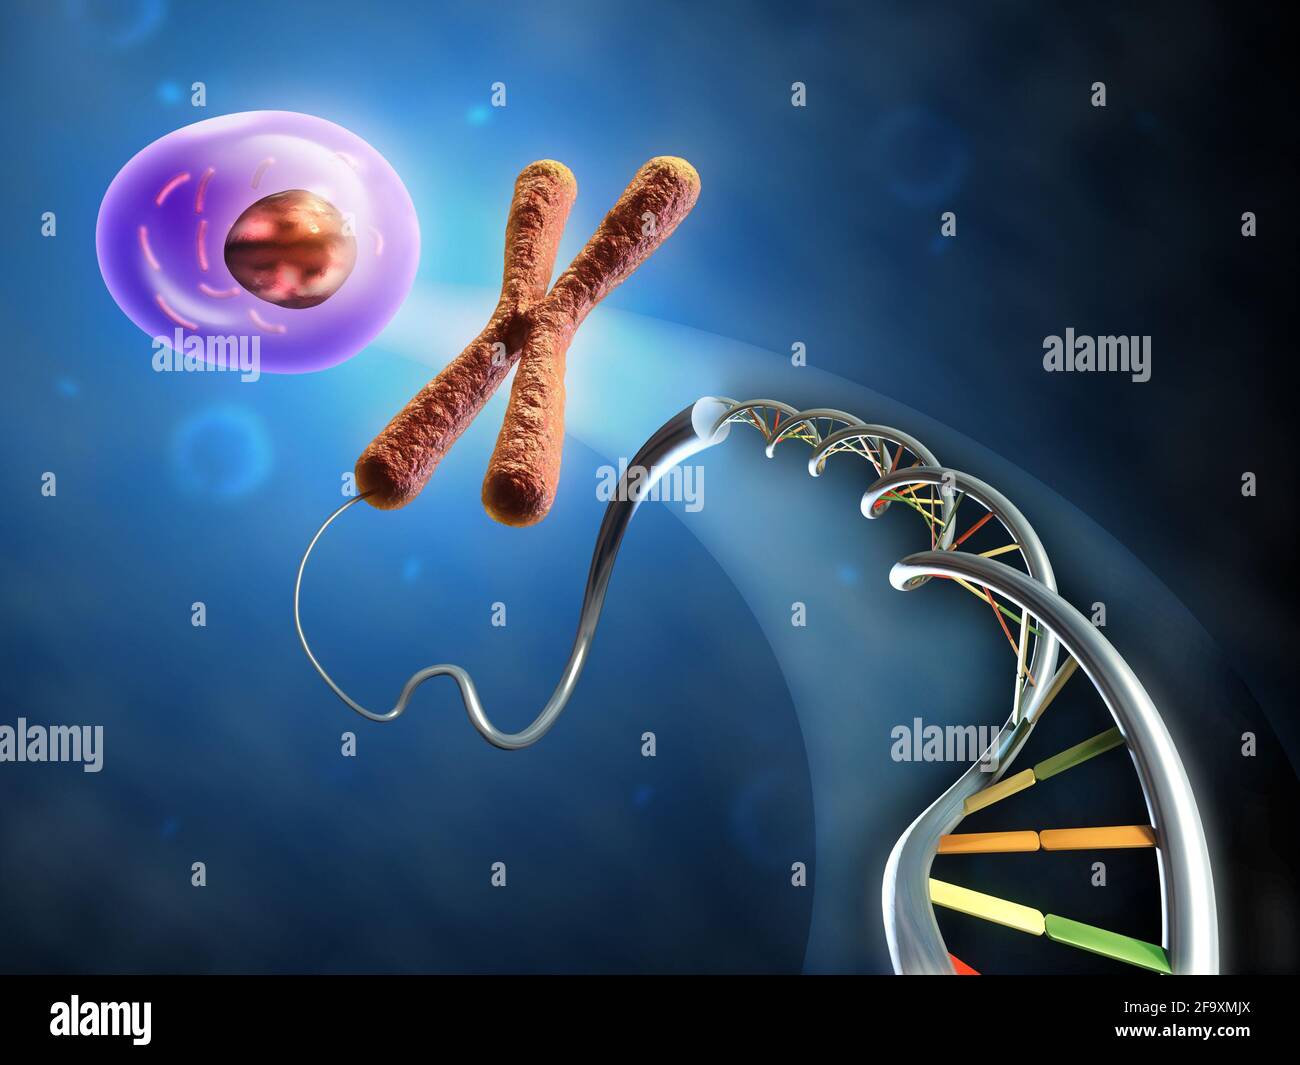 Abbildung zeigt die Bildung einer Tierzelle aus dna und Chromosomen. Digitale Illustration. Stockfoto